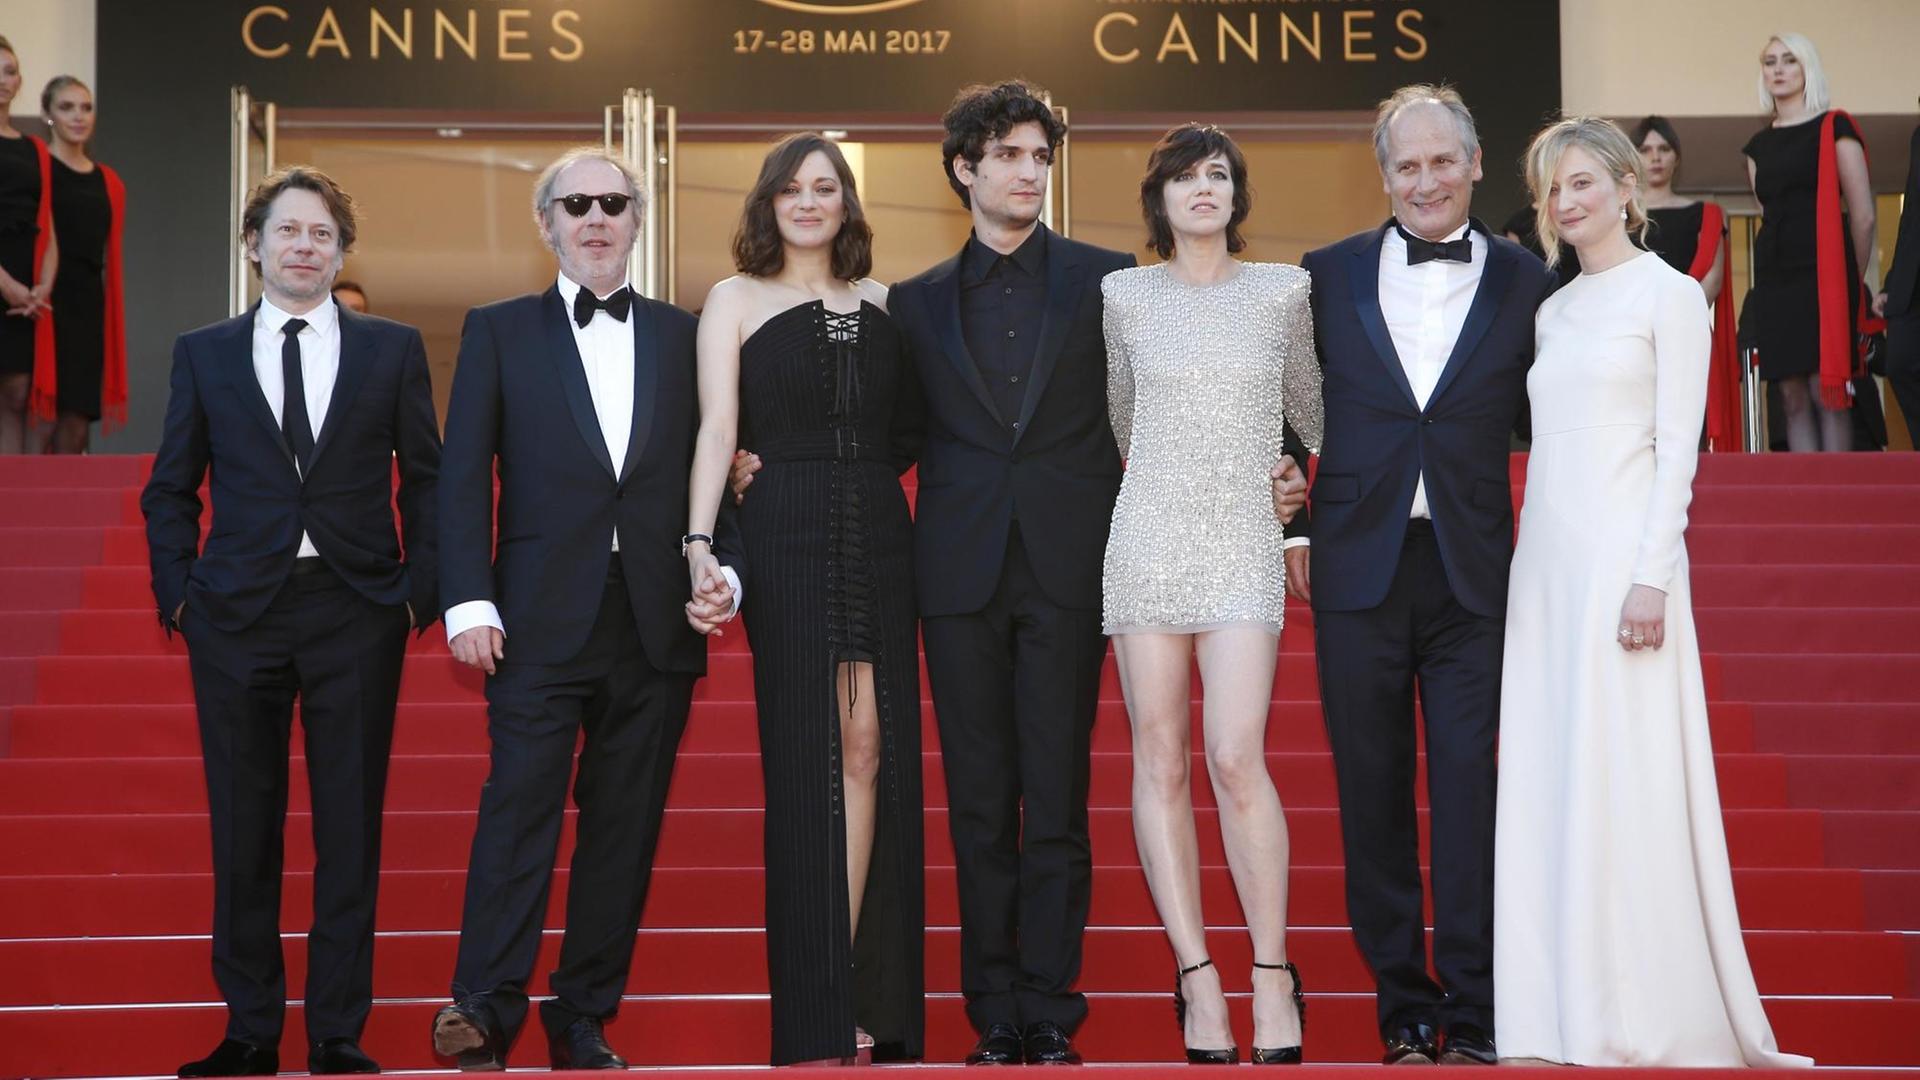 Eröffnung des 70. Filmfestivals in Cannes - hier die Crew des Auftaktfilms "Les Fantômes d'Ismaël" auf dem roten Teppich.